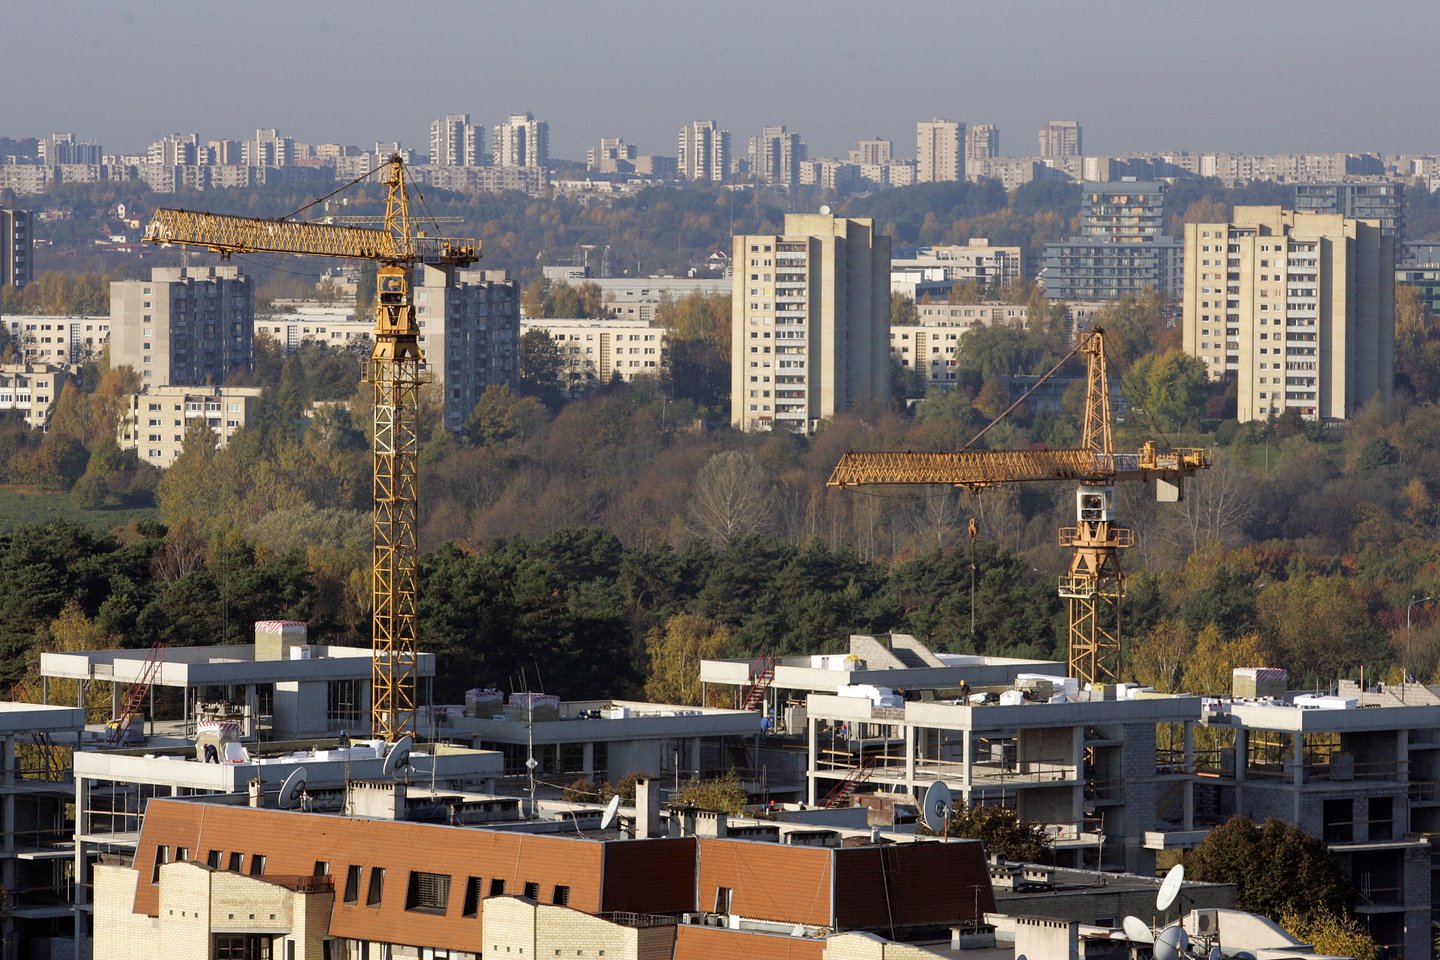 Antrasis 2021 metų pusmetis Vilniaus pirminėje rinkoje prasidėjo aktyviai. 2021 m. liepos mėn. sostinėje susitarta dėl 565 naujų būstų pardavimo, įskaitant butus, apartamentus, loftus ir kotedžus (į stebėjimus neįtraukiami pavieniui statomi individualūs ir dvibučiai gyvenamieji namai).<br>V.Balkūno nuotr.